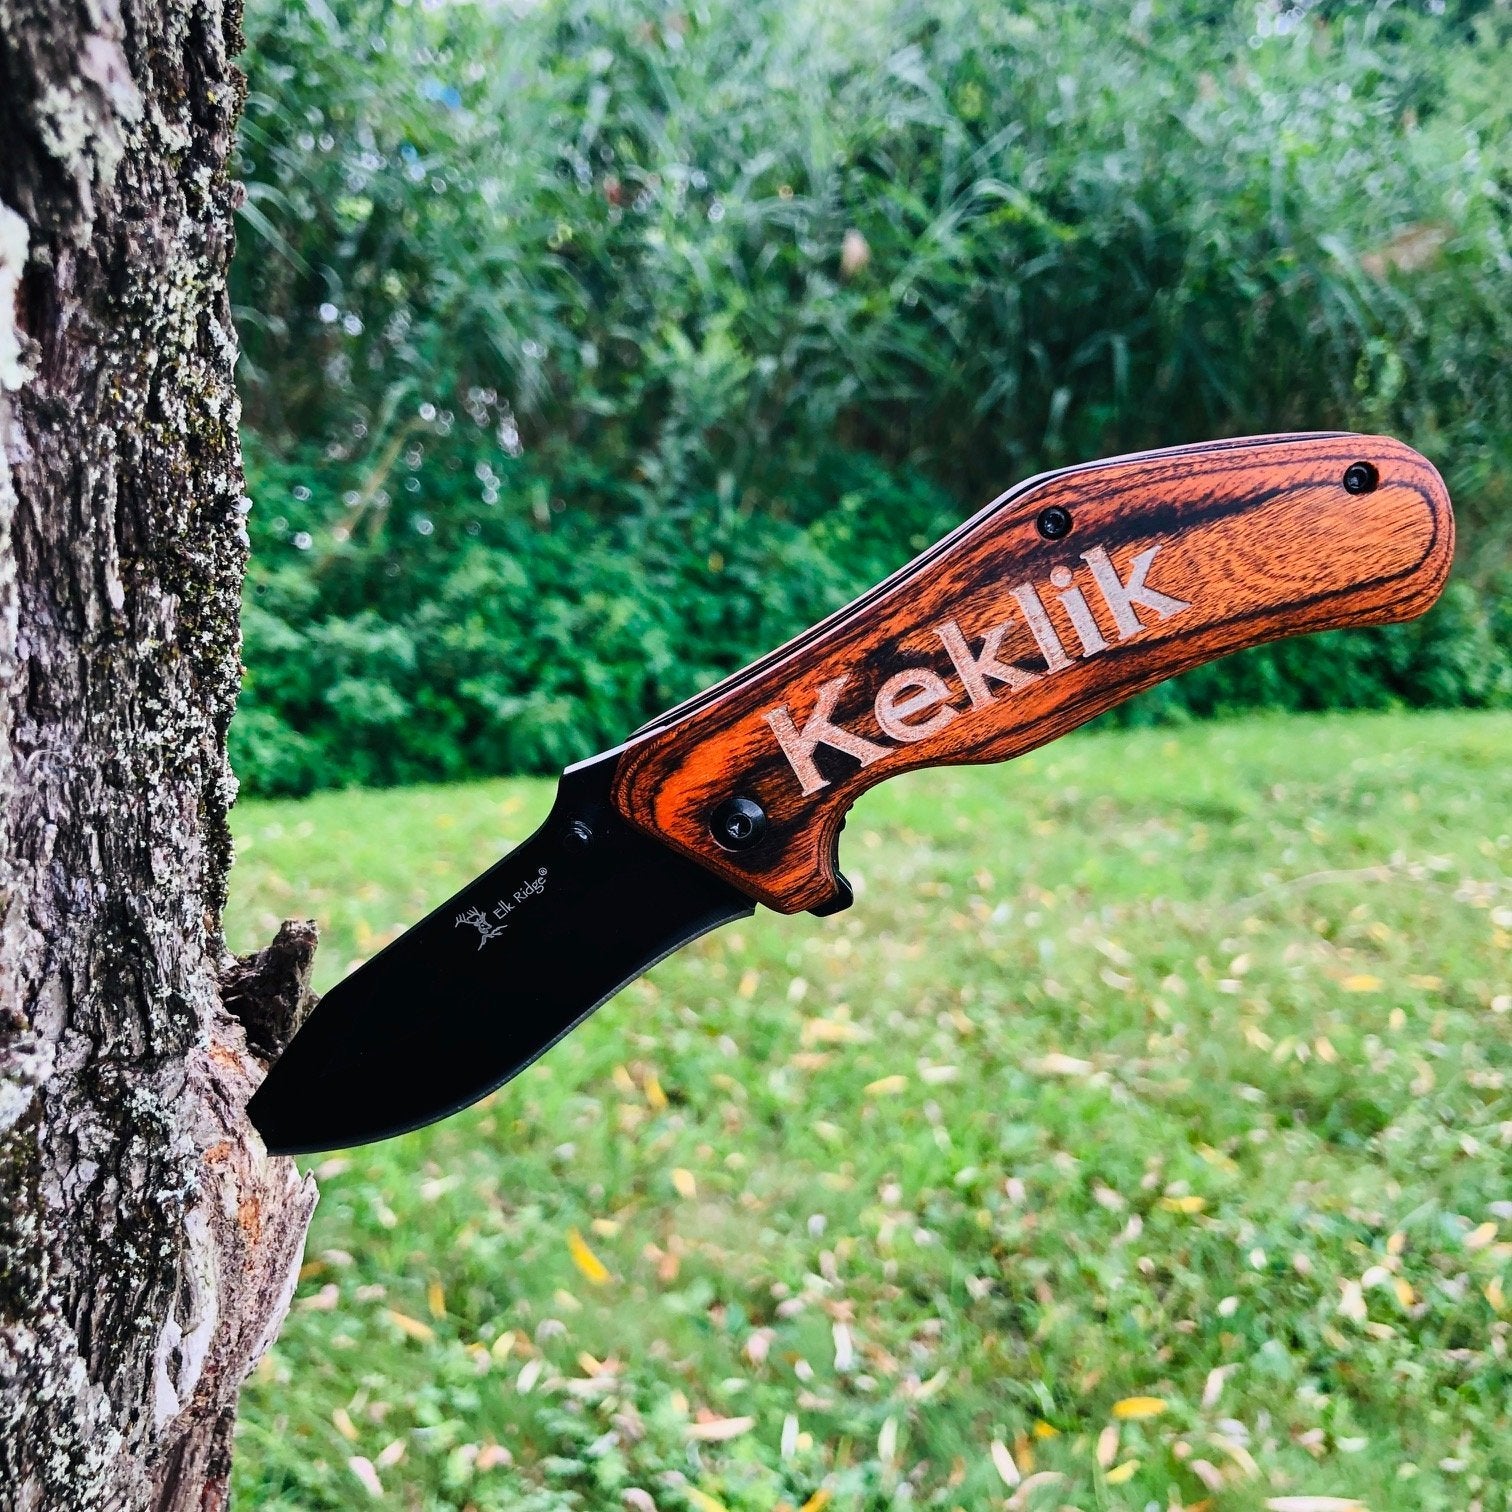 Personalized Elk Ridge Folding Wood Handle Pocket Knife